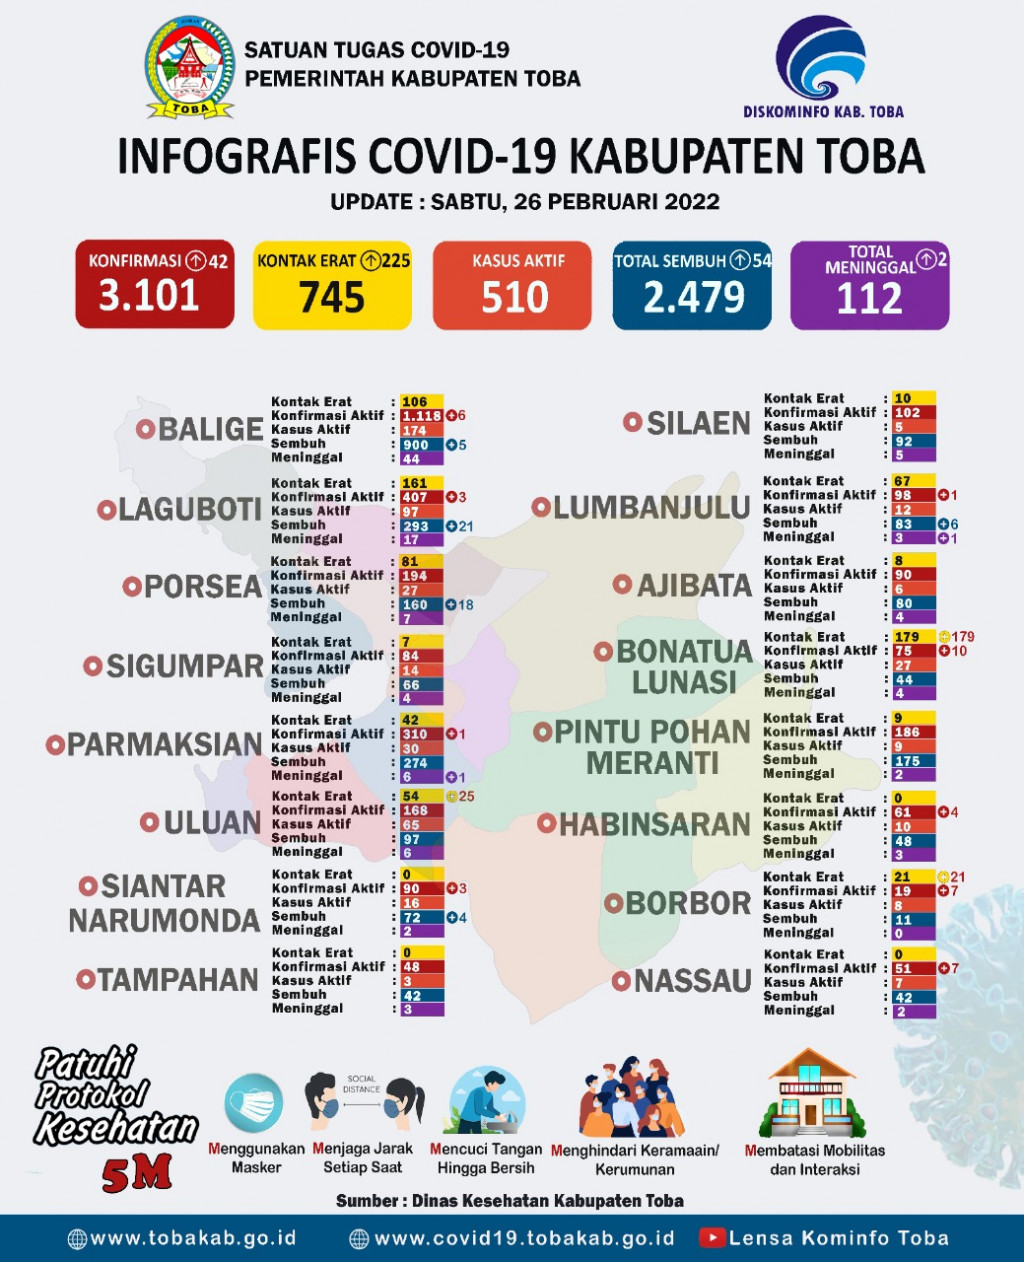 Kasus Aktif Covid-19 di Toba 510 Orang, Terbanyak di Balige